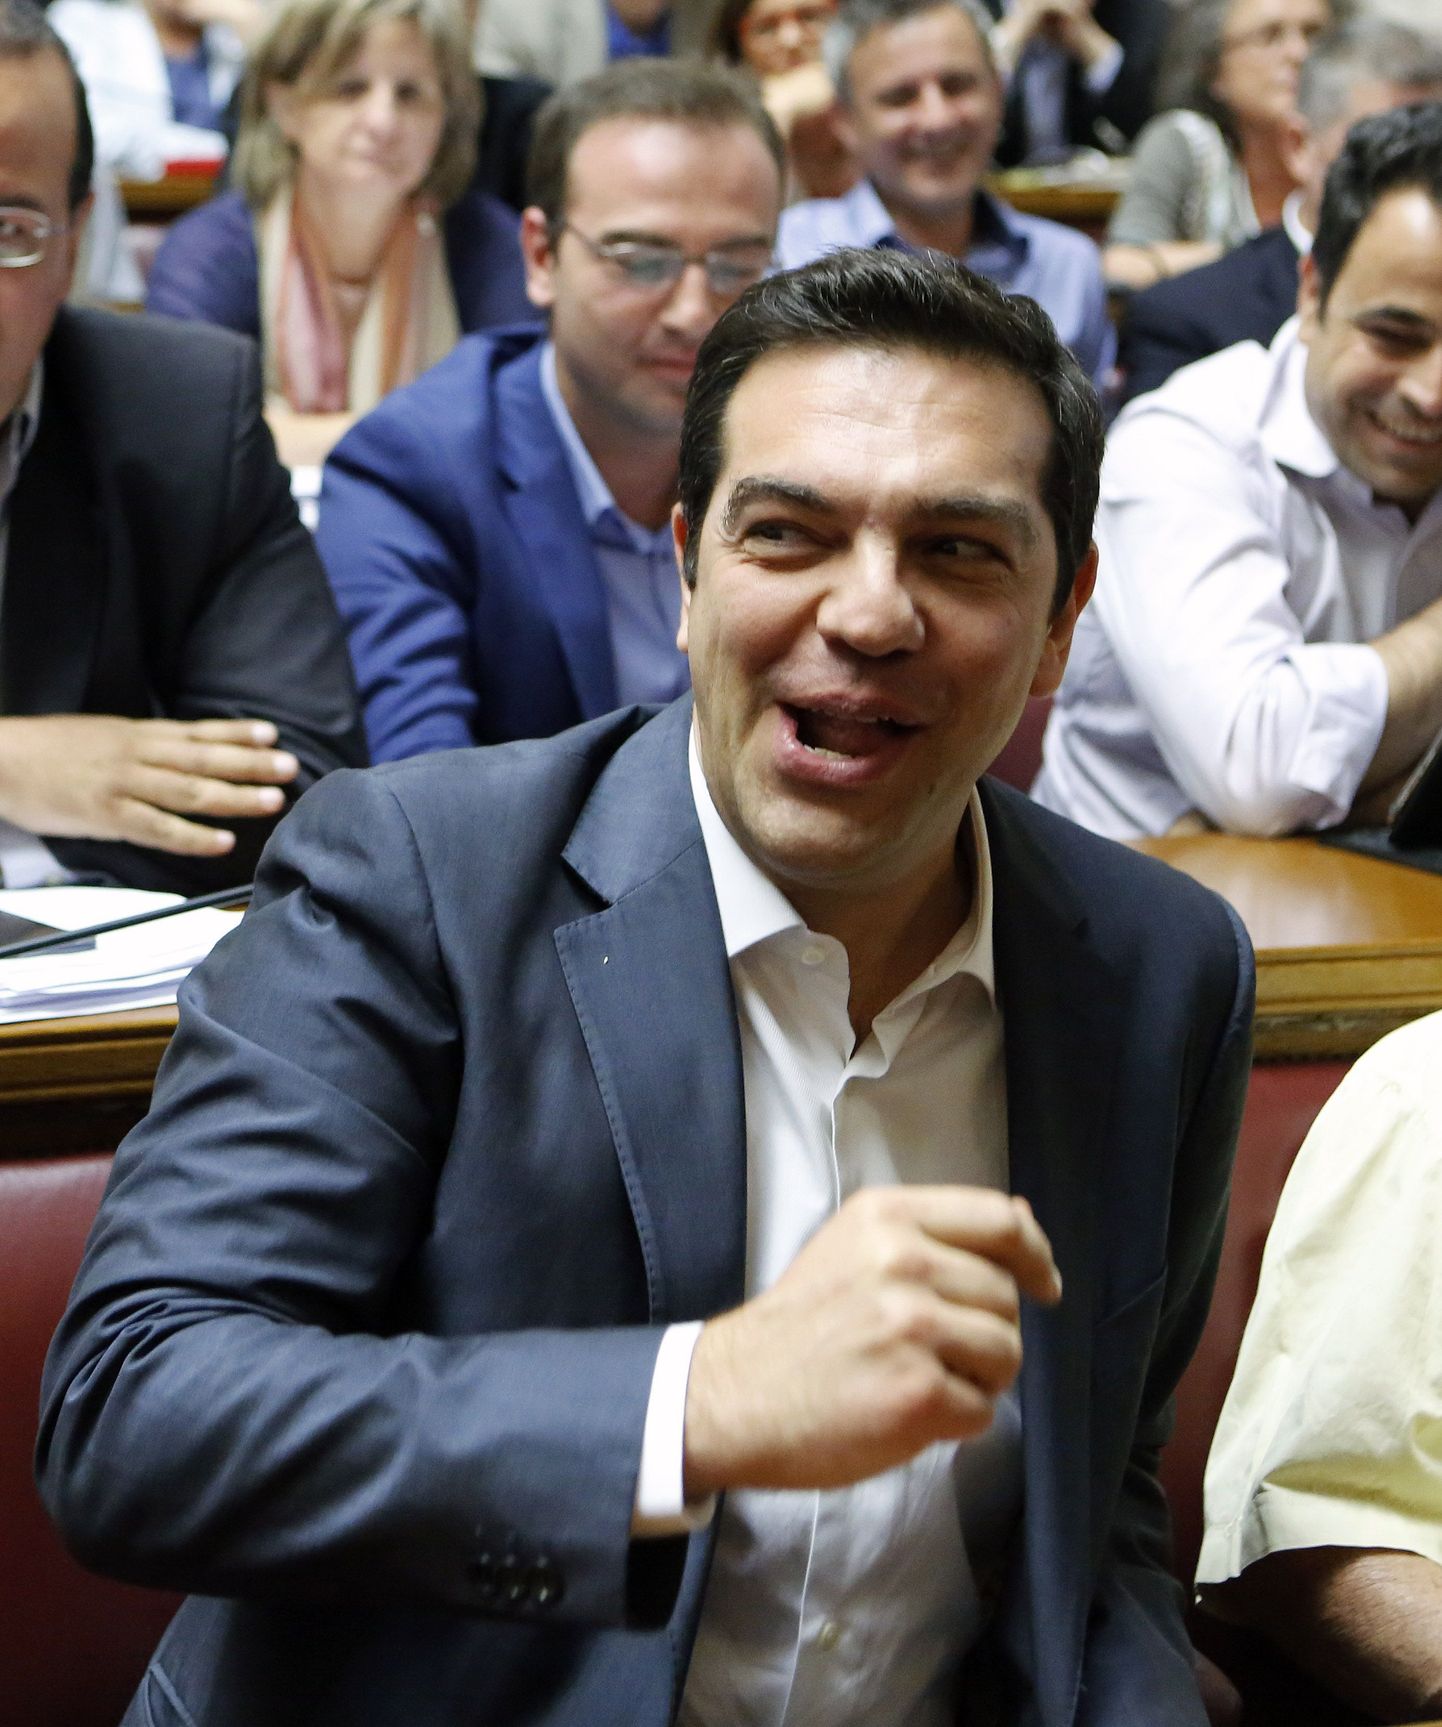 Kreeka ekspeaminister Alexis Tsipras.